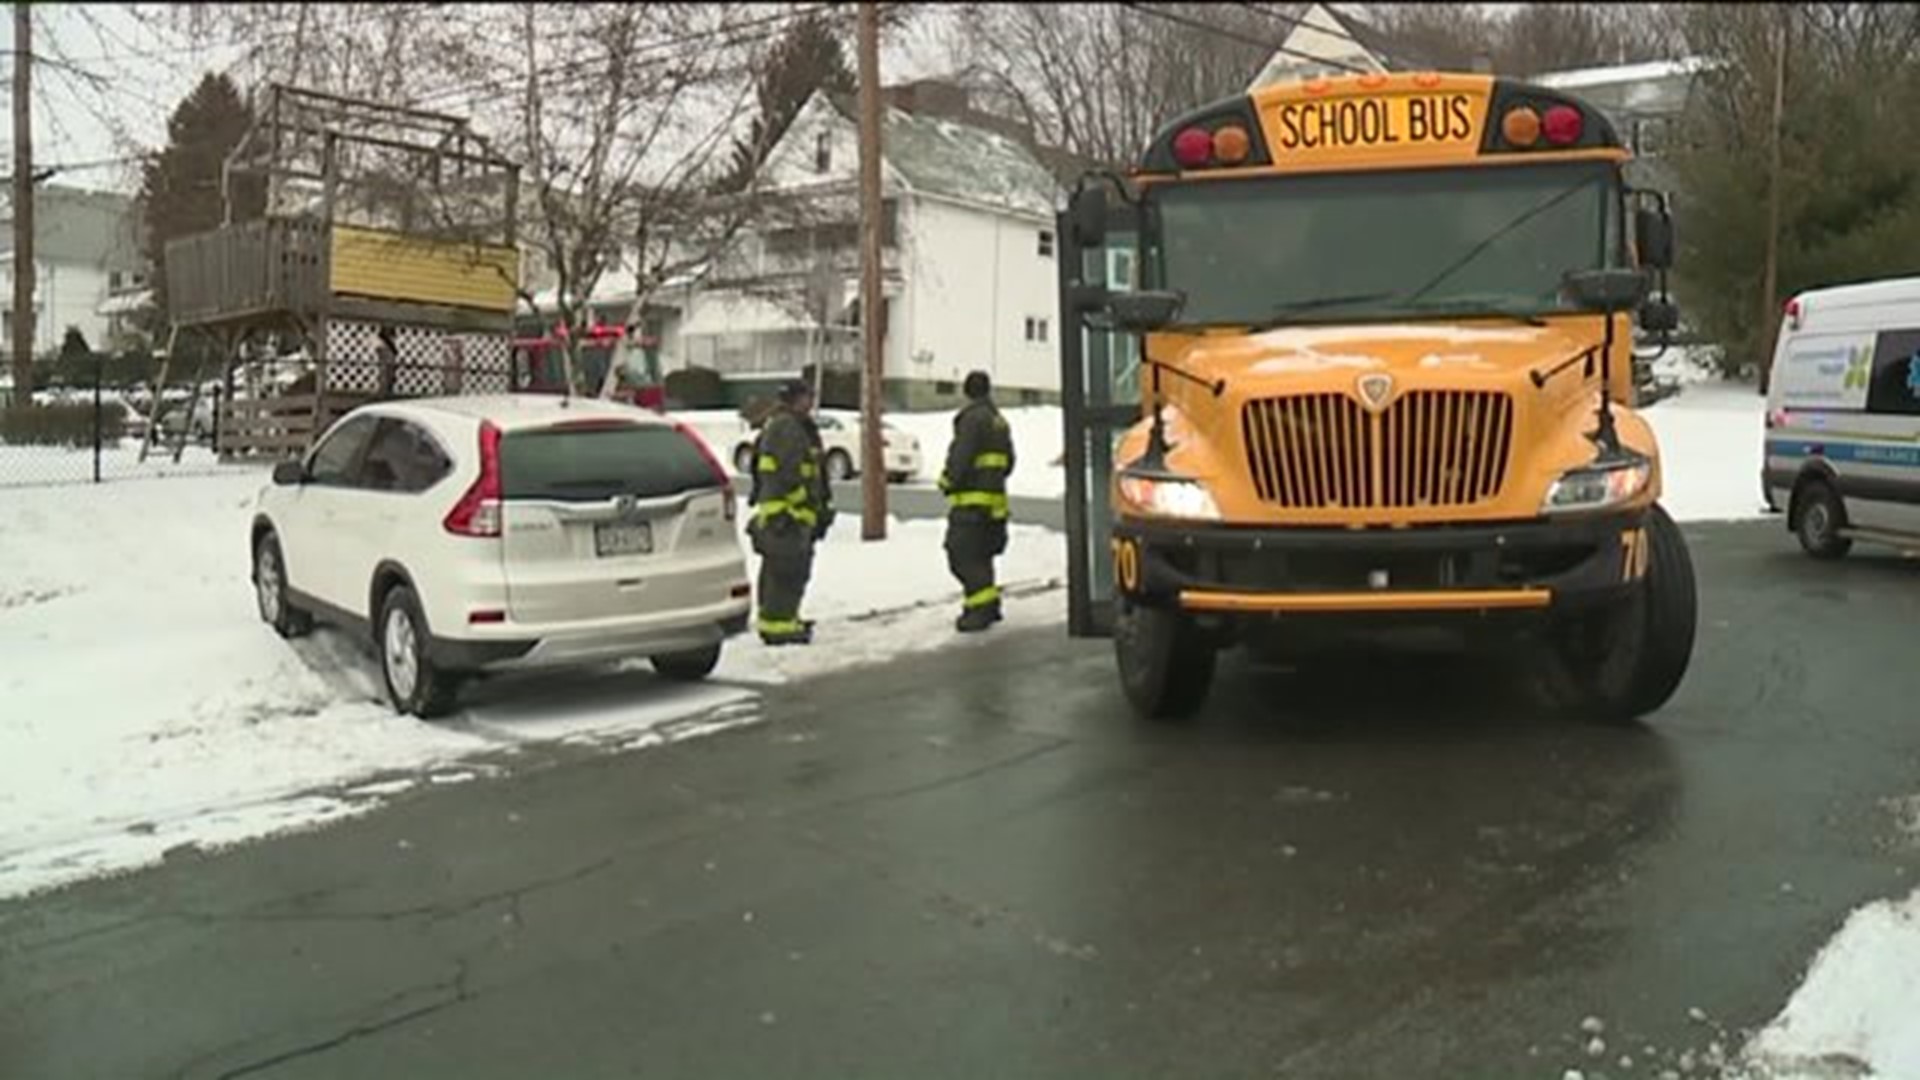 School Bus, SUV Collide in Scranton